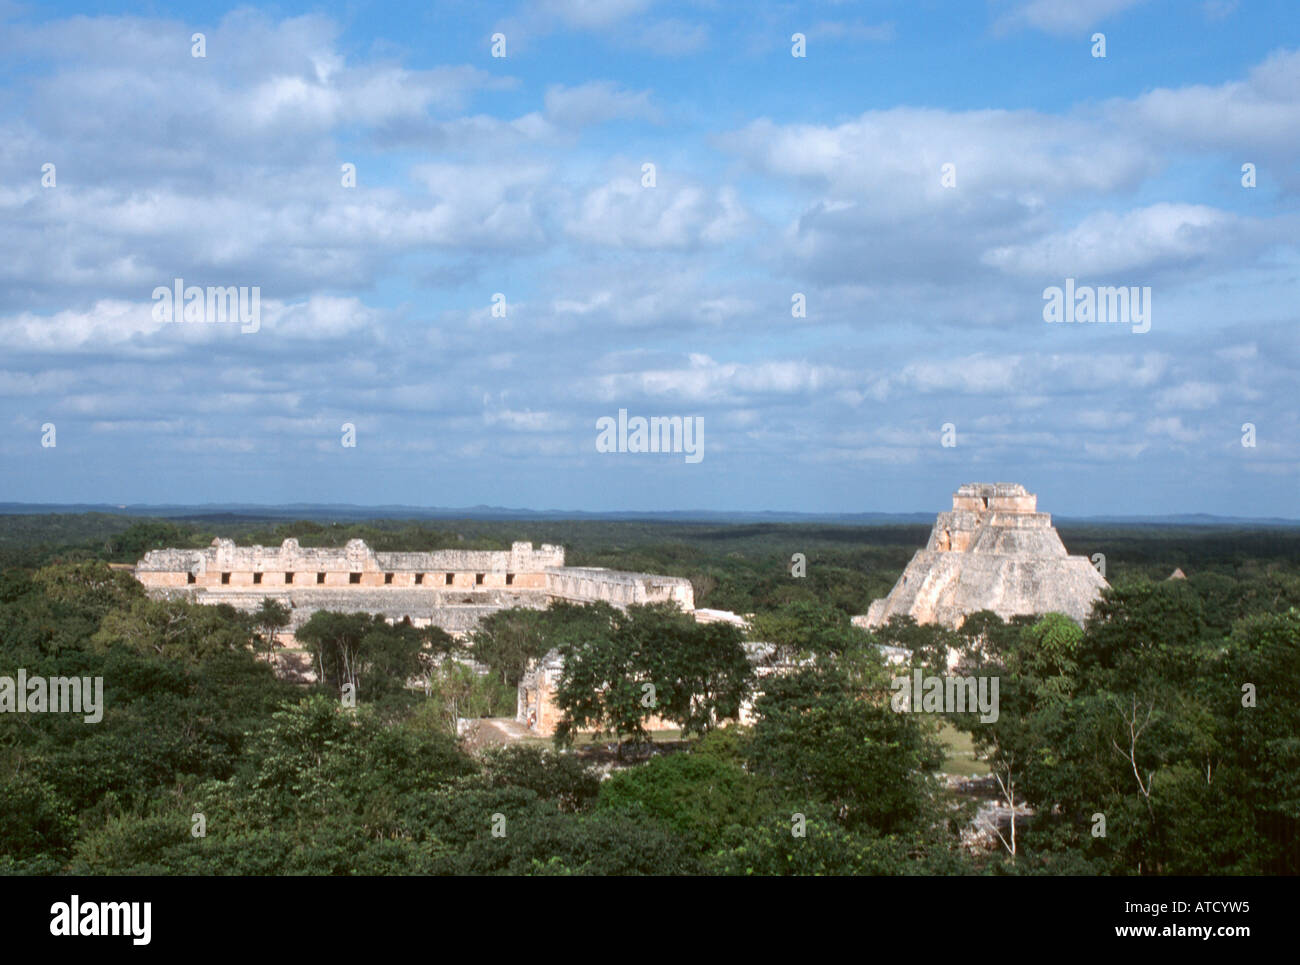 View from Great Pyramid at the Mayan Ruins of Uxmal, Yucatan Peninsula, Mexico Stock Photo